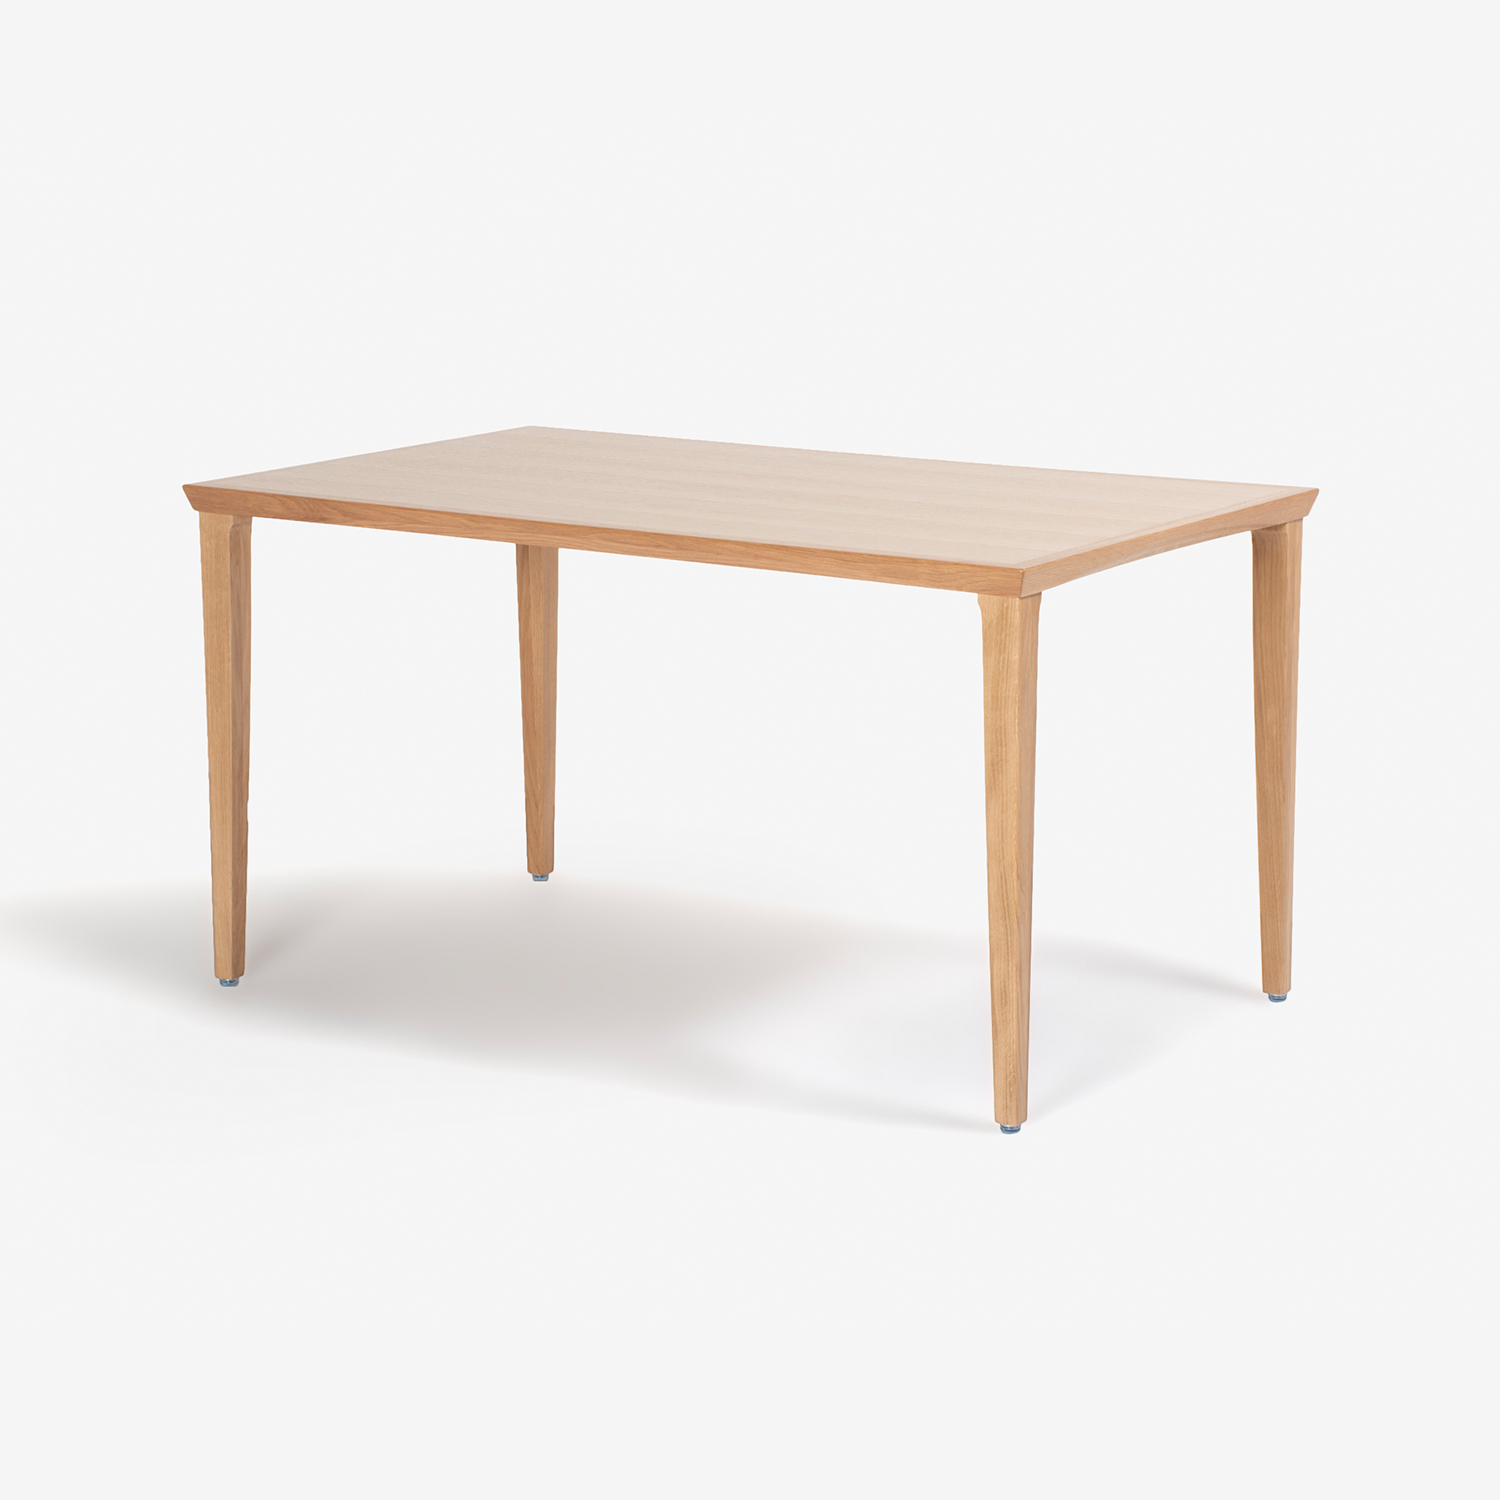 秋田木工 ダイニングテーブル「N-T005」ナラ材 ホワイトオーク色 全3サイズ【決算セールのため幅135cm・150cmタイプのみ20%オフ】